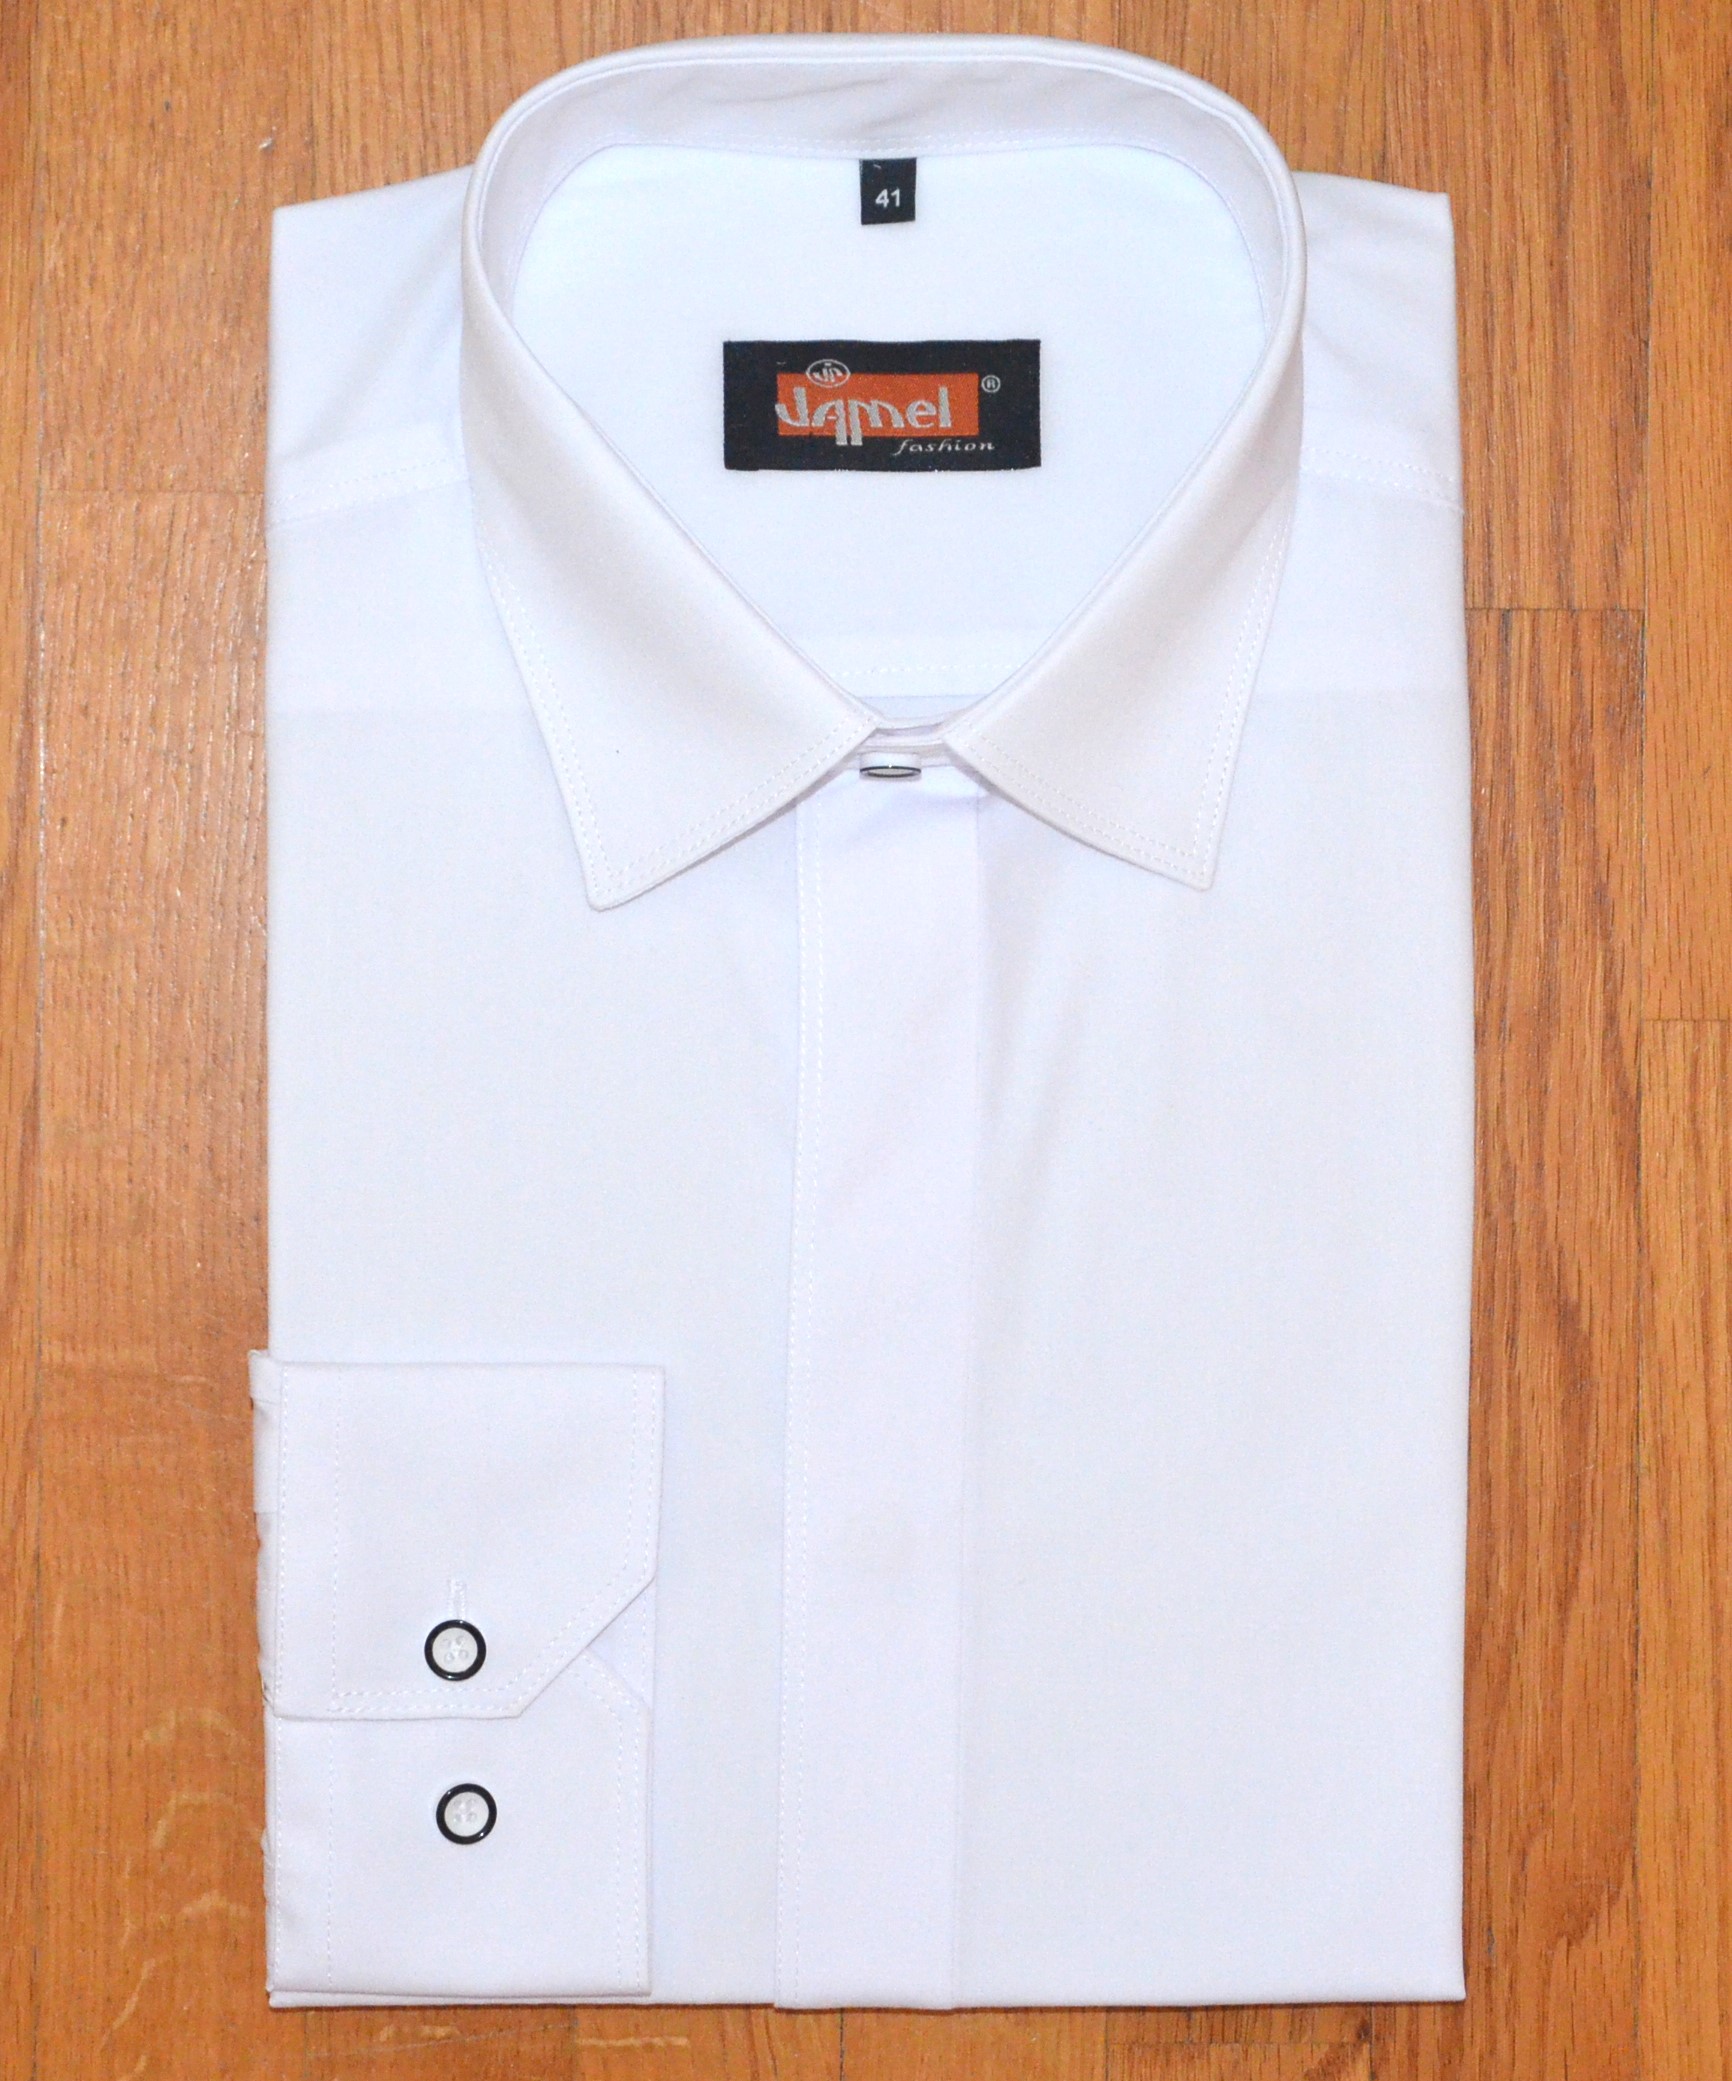 Pánská košile dlouhý rukáv Jamel Fashion 563 101/20 001/20 REGULAR FIT Bílá zakrytá léga Velikost: 44